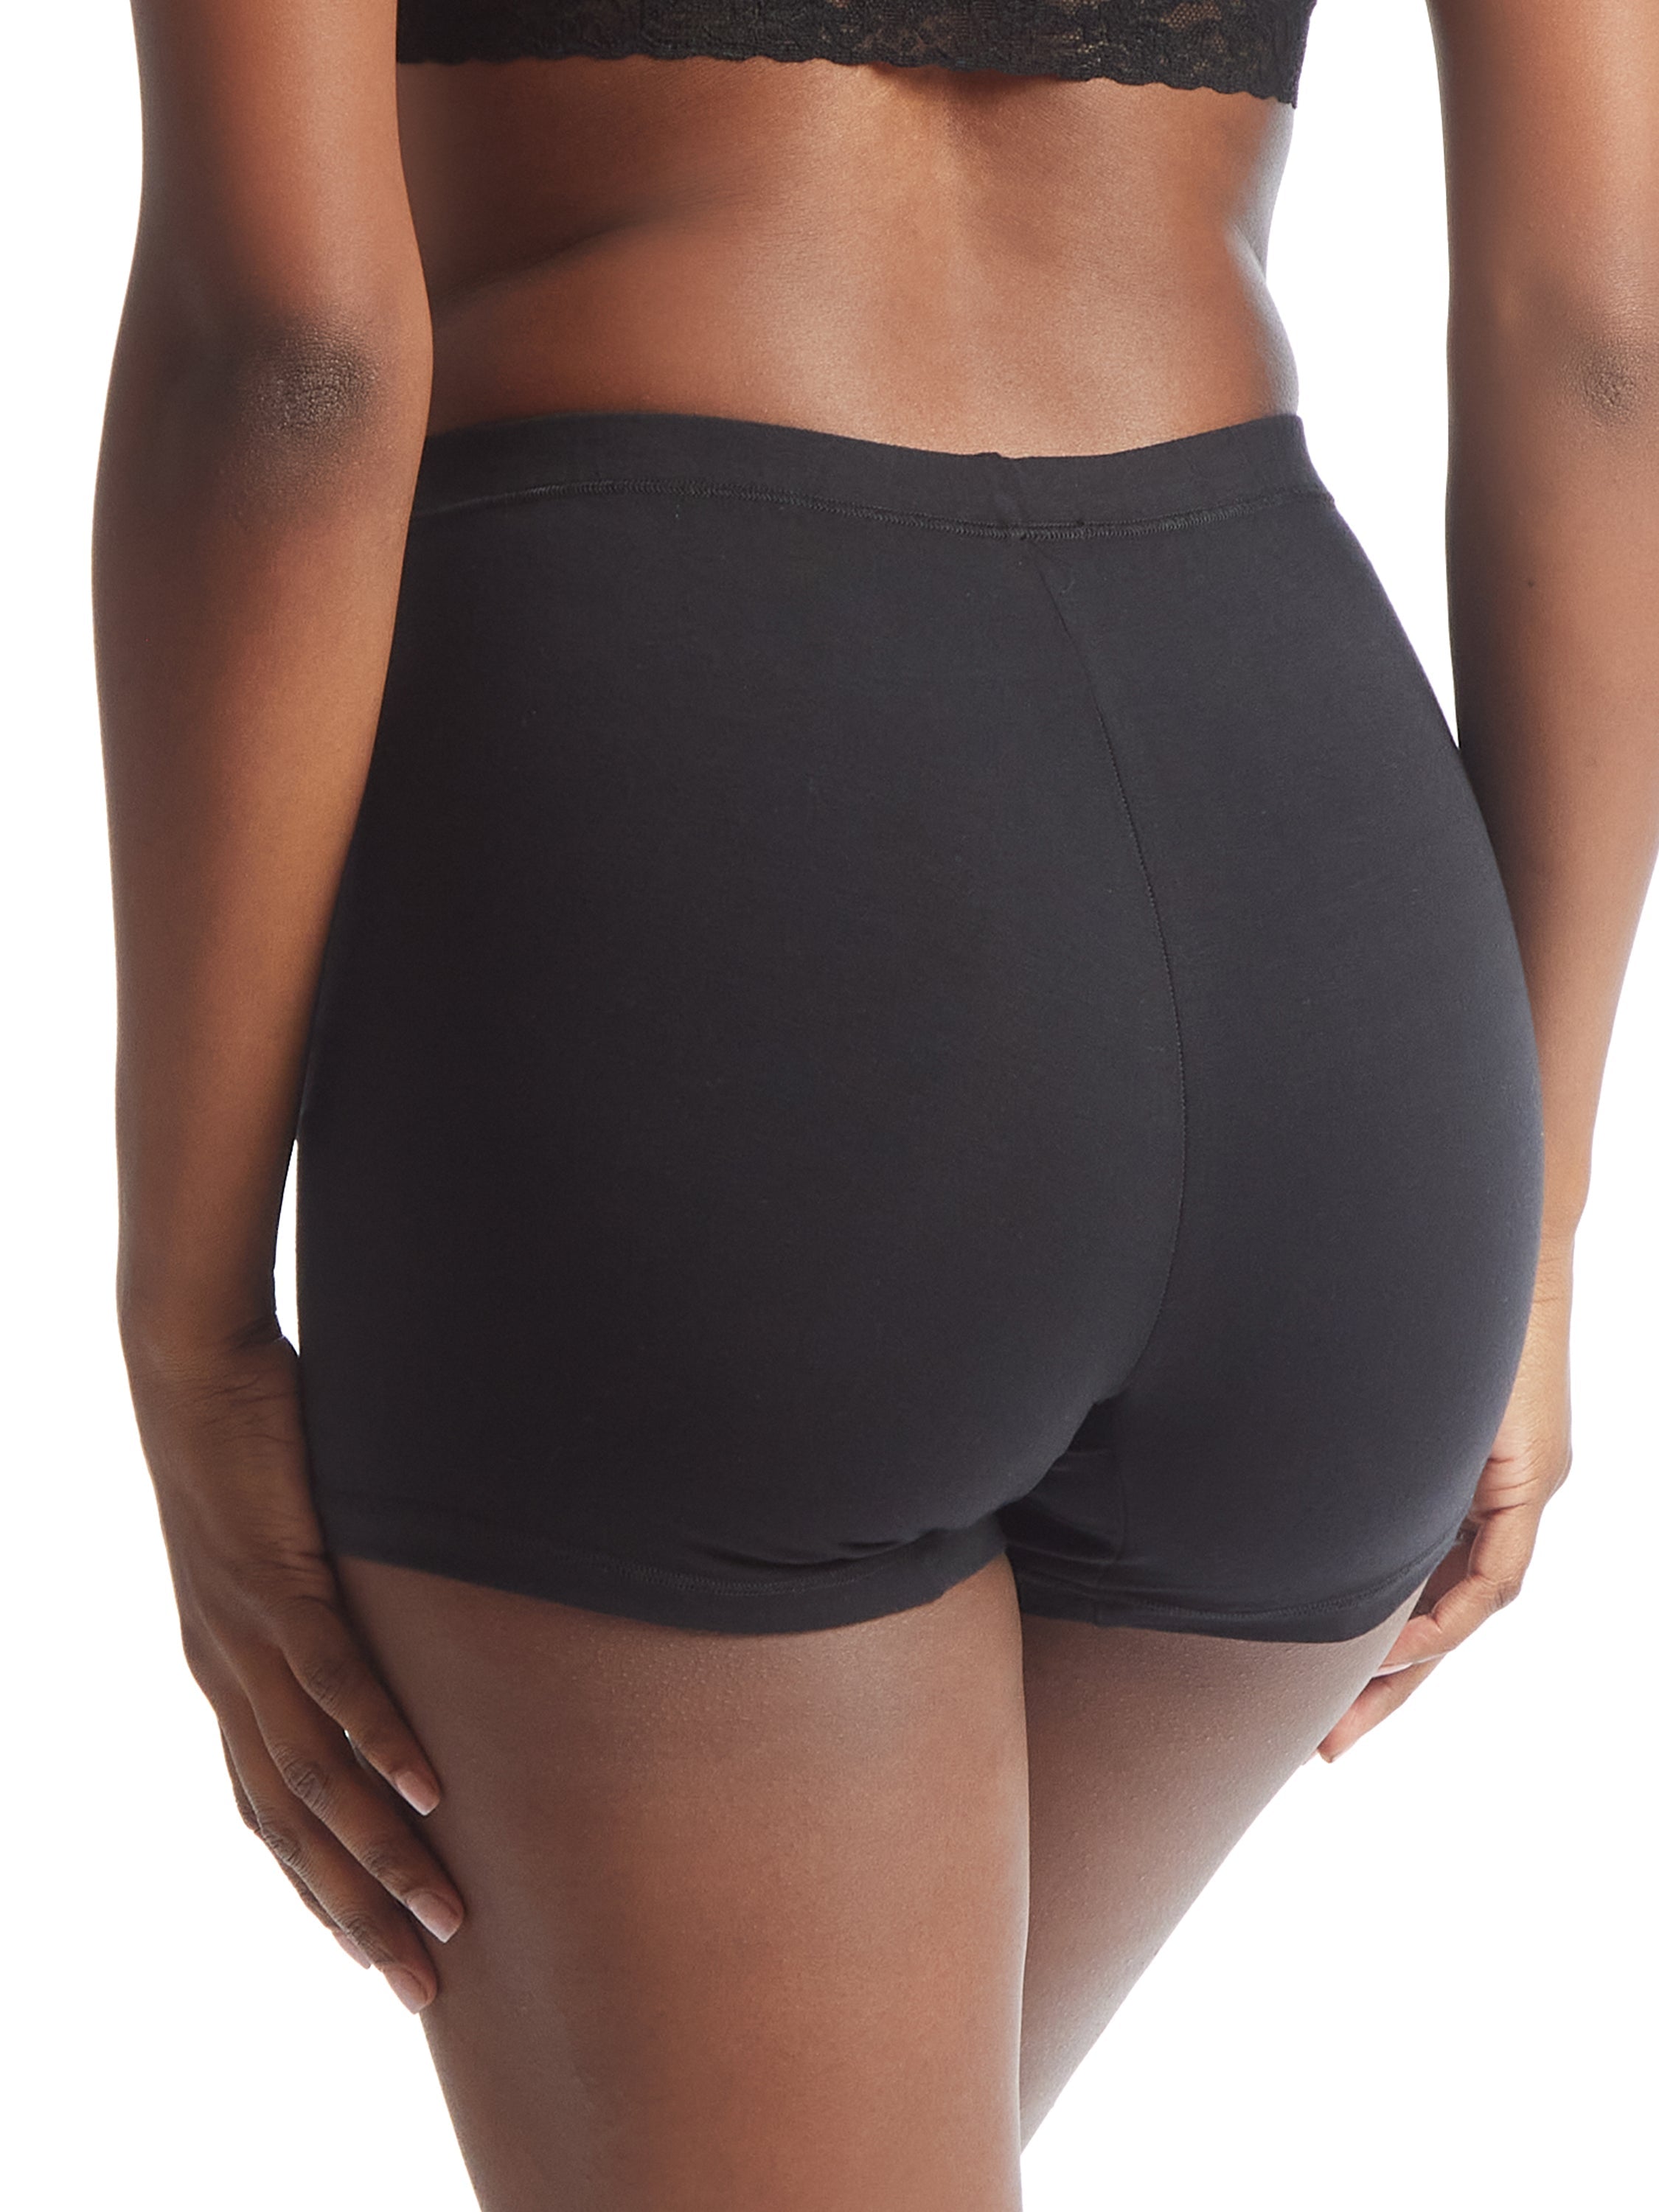 The Proper Underwear ™ Black Supima Cotton